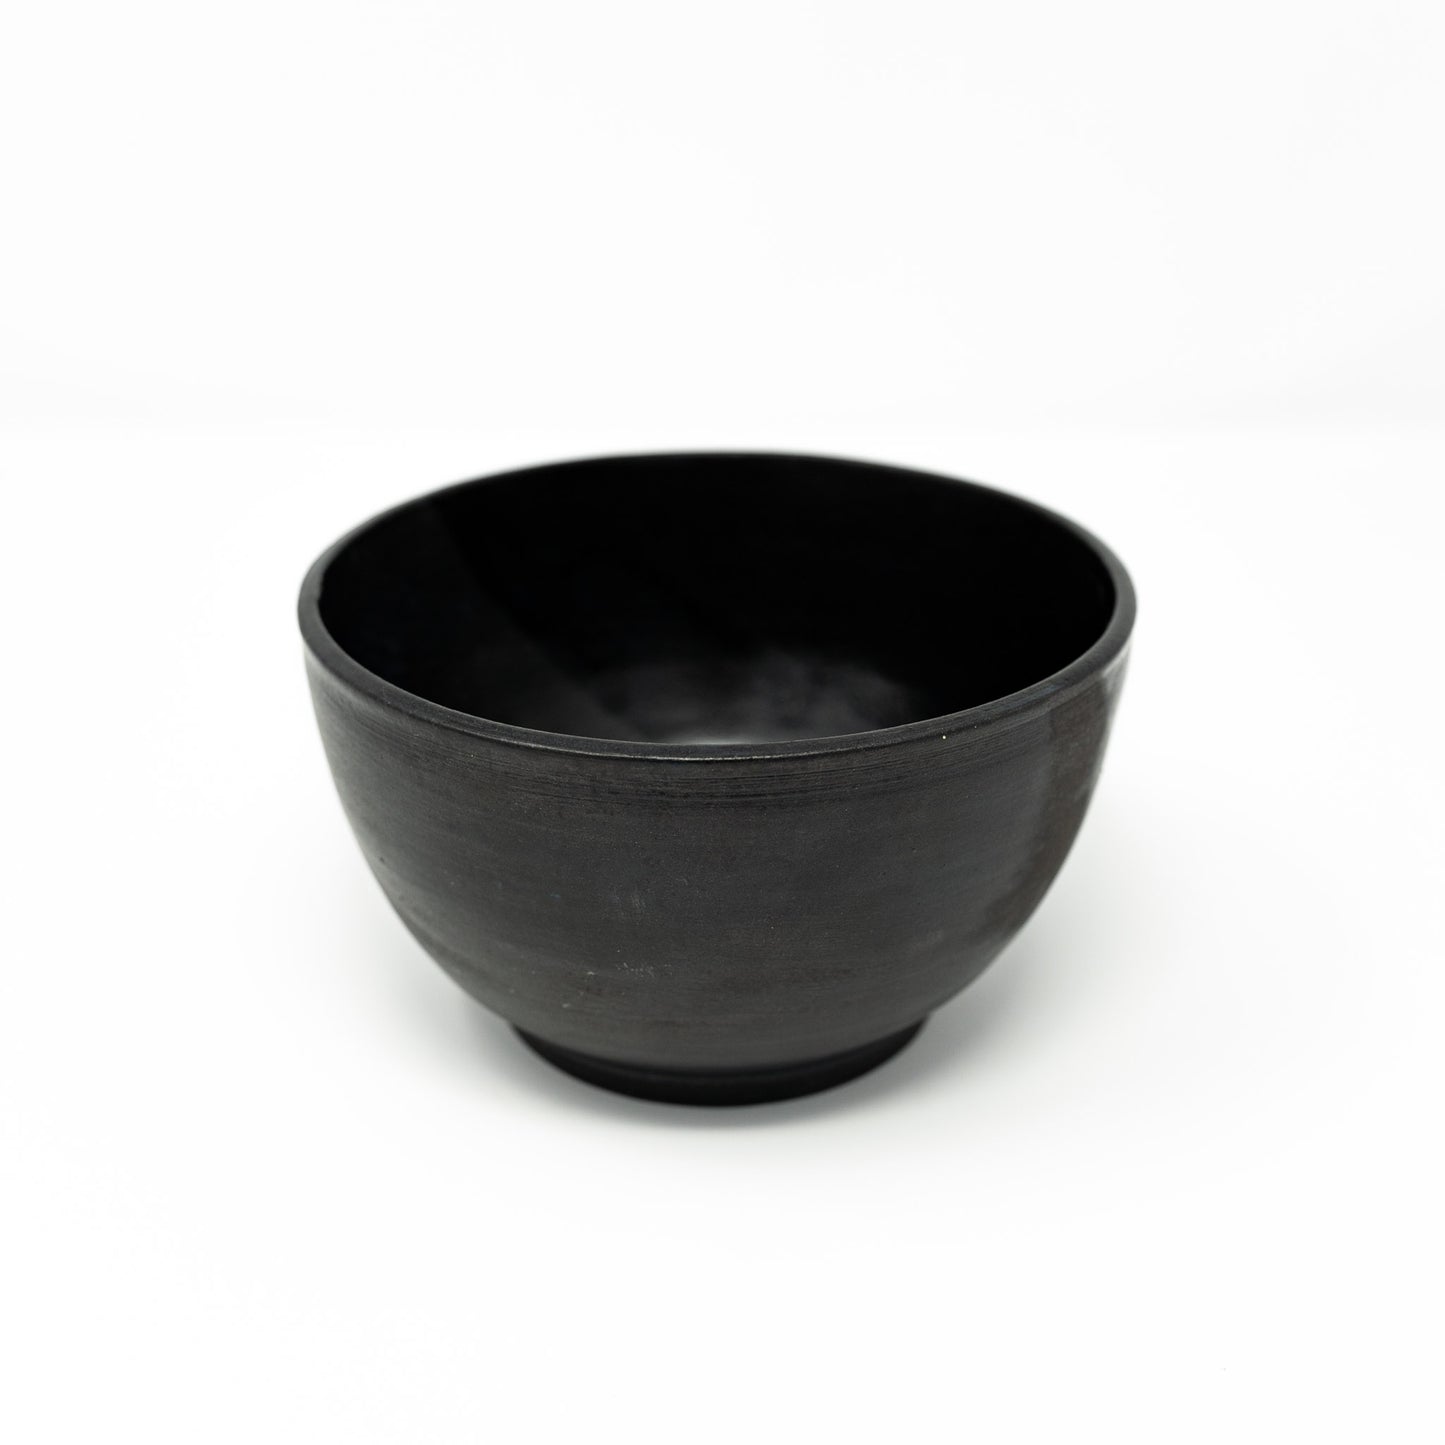 Obsidian bowls